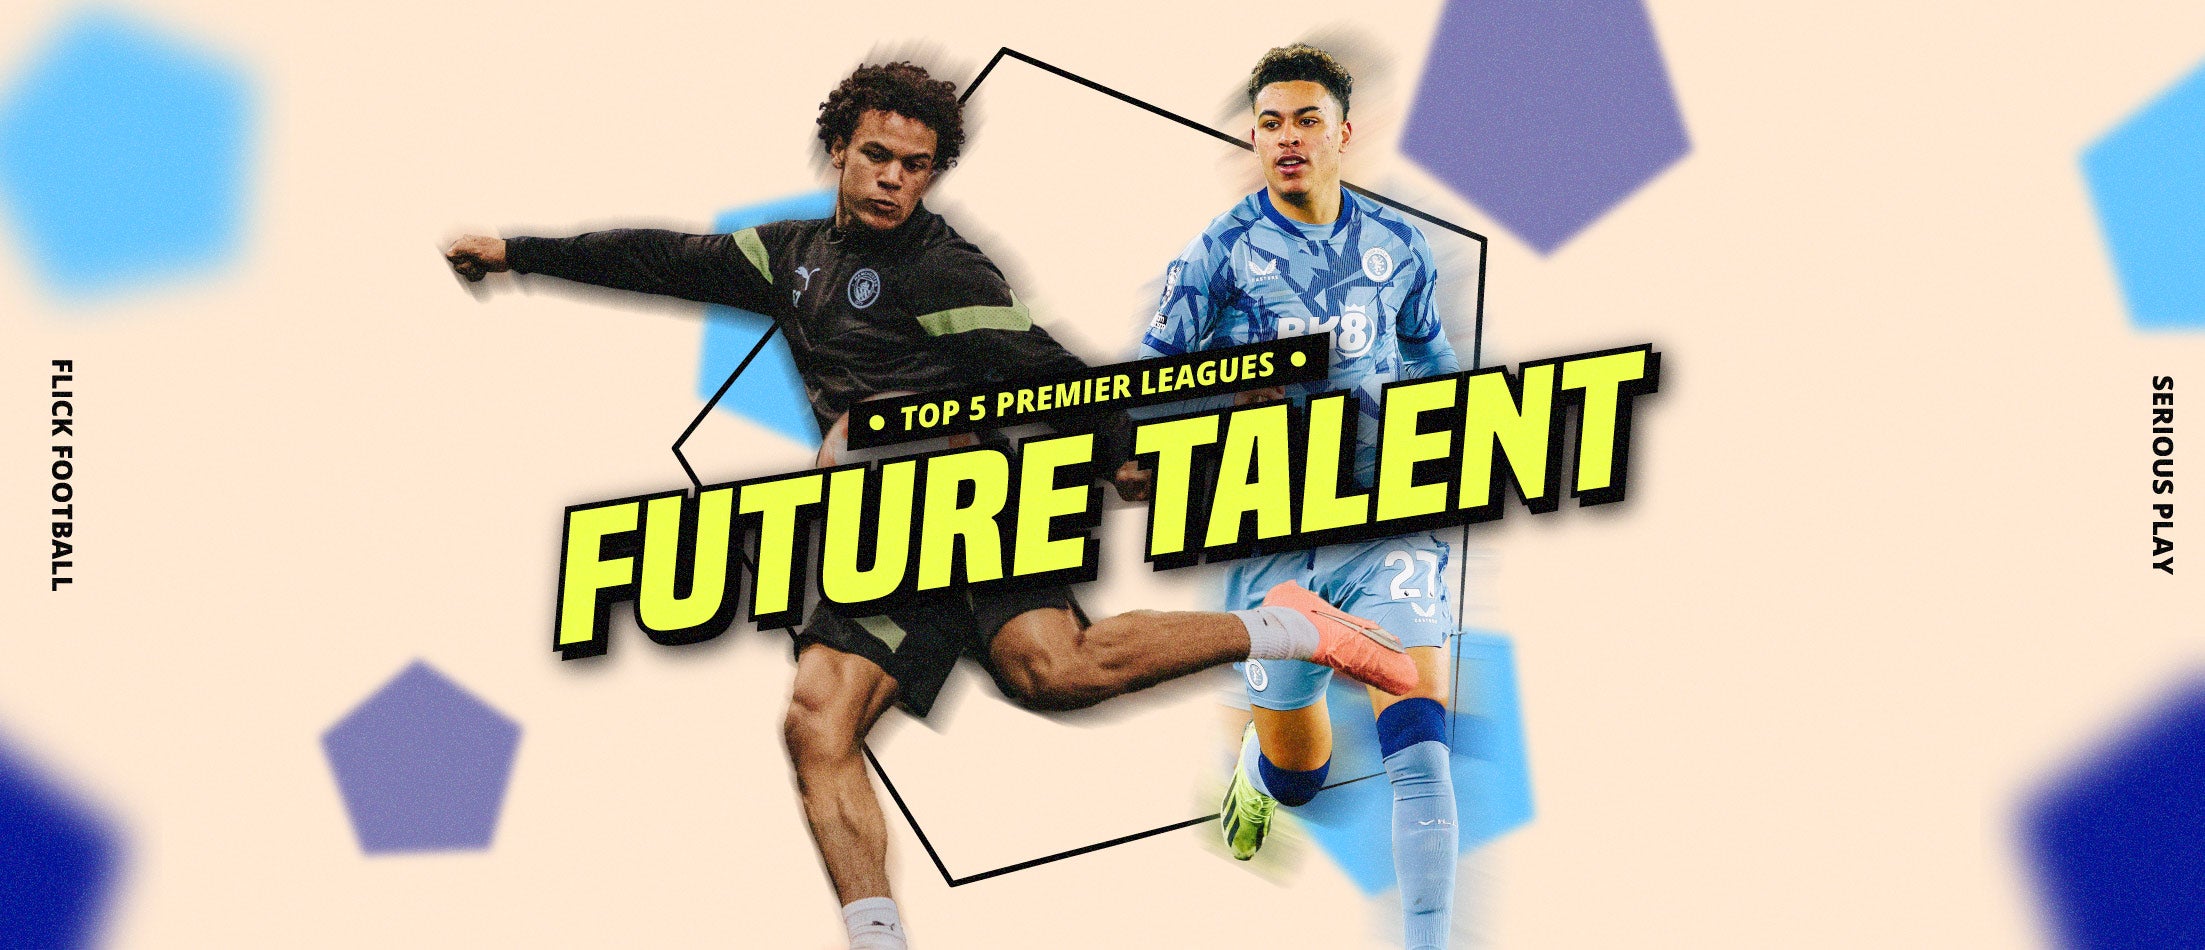 Top 5 Premier League Future Talents